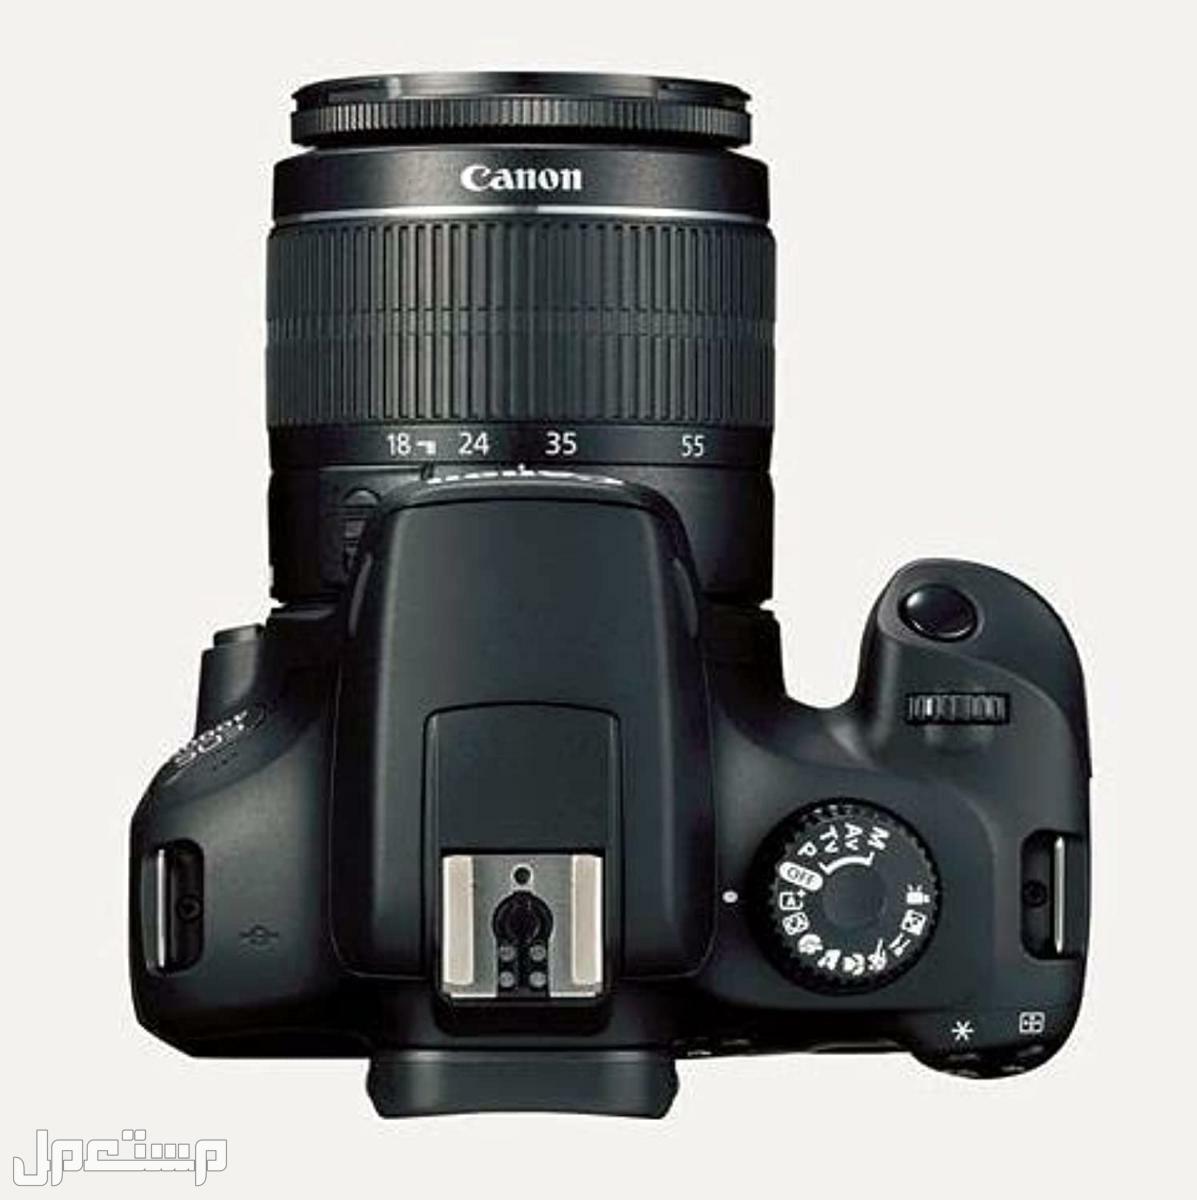 مواصفات وأهم مميزات وأسعار أرخص كاميرا تصوير من كانون في الإمارات العربية المتحدة كاميرا كانون  D 4000 بعدسة احادية